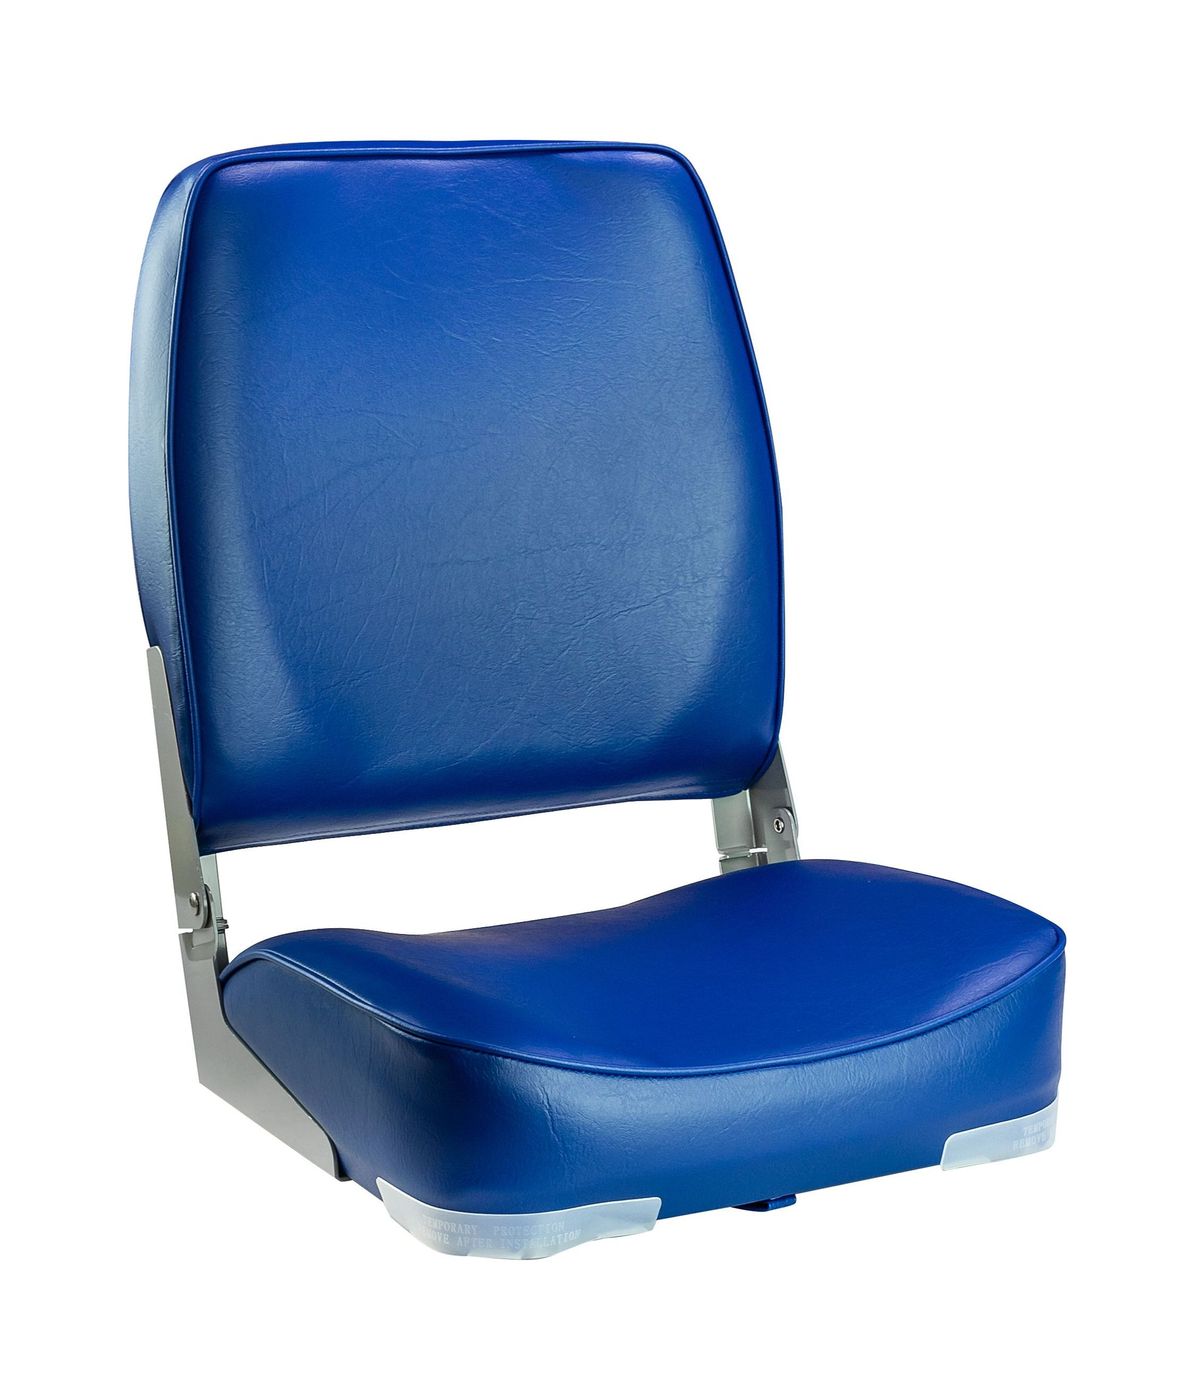 Кресло мягкое складное, высокая спинка, обивка винил, цвет синий, Marine Rocket 75127B-MR кресло складное мягкое sport с высокой спинкой синий серый 1040513